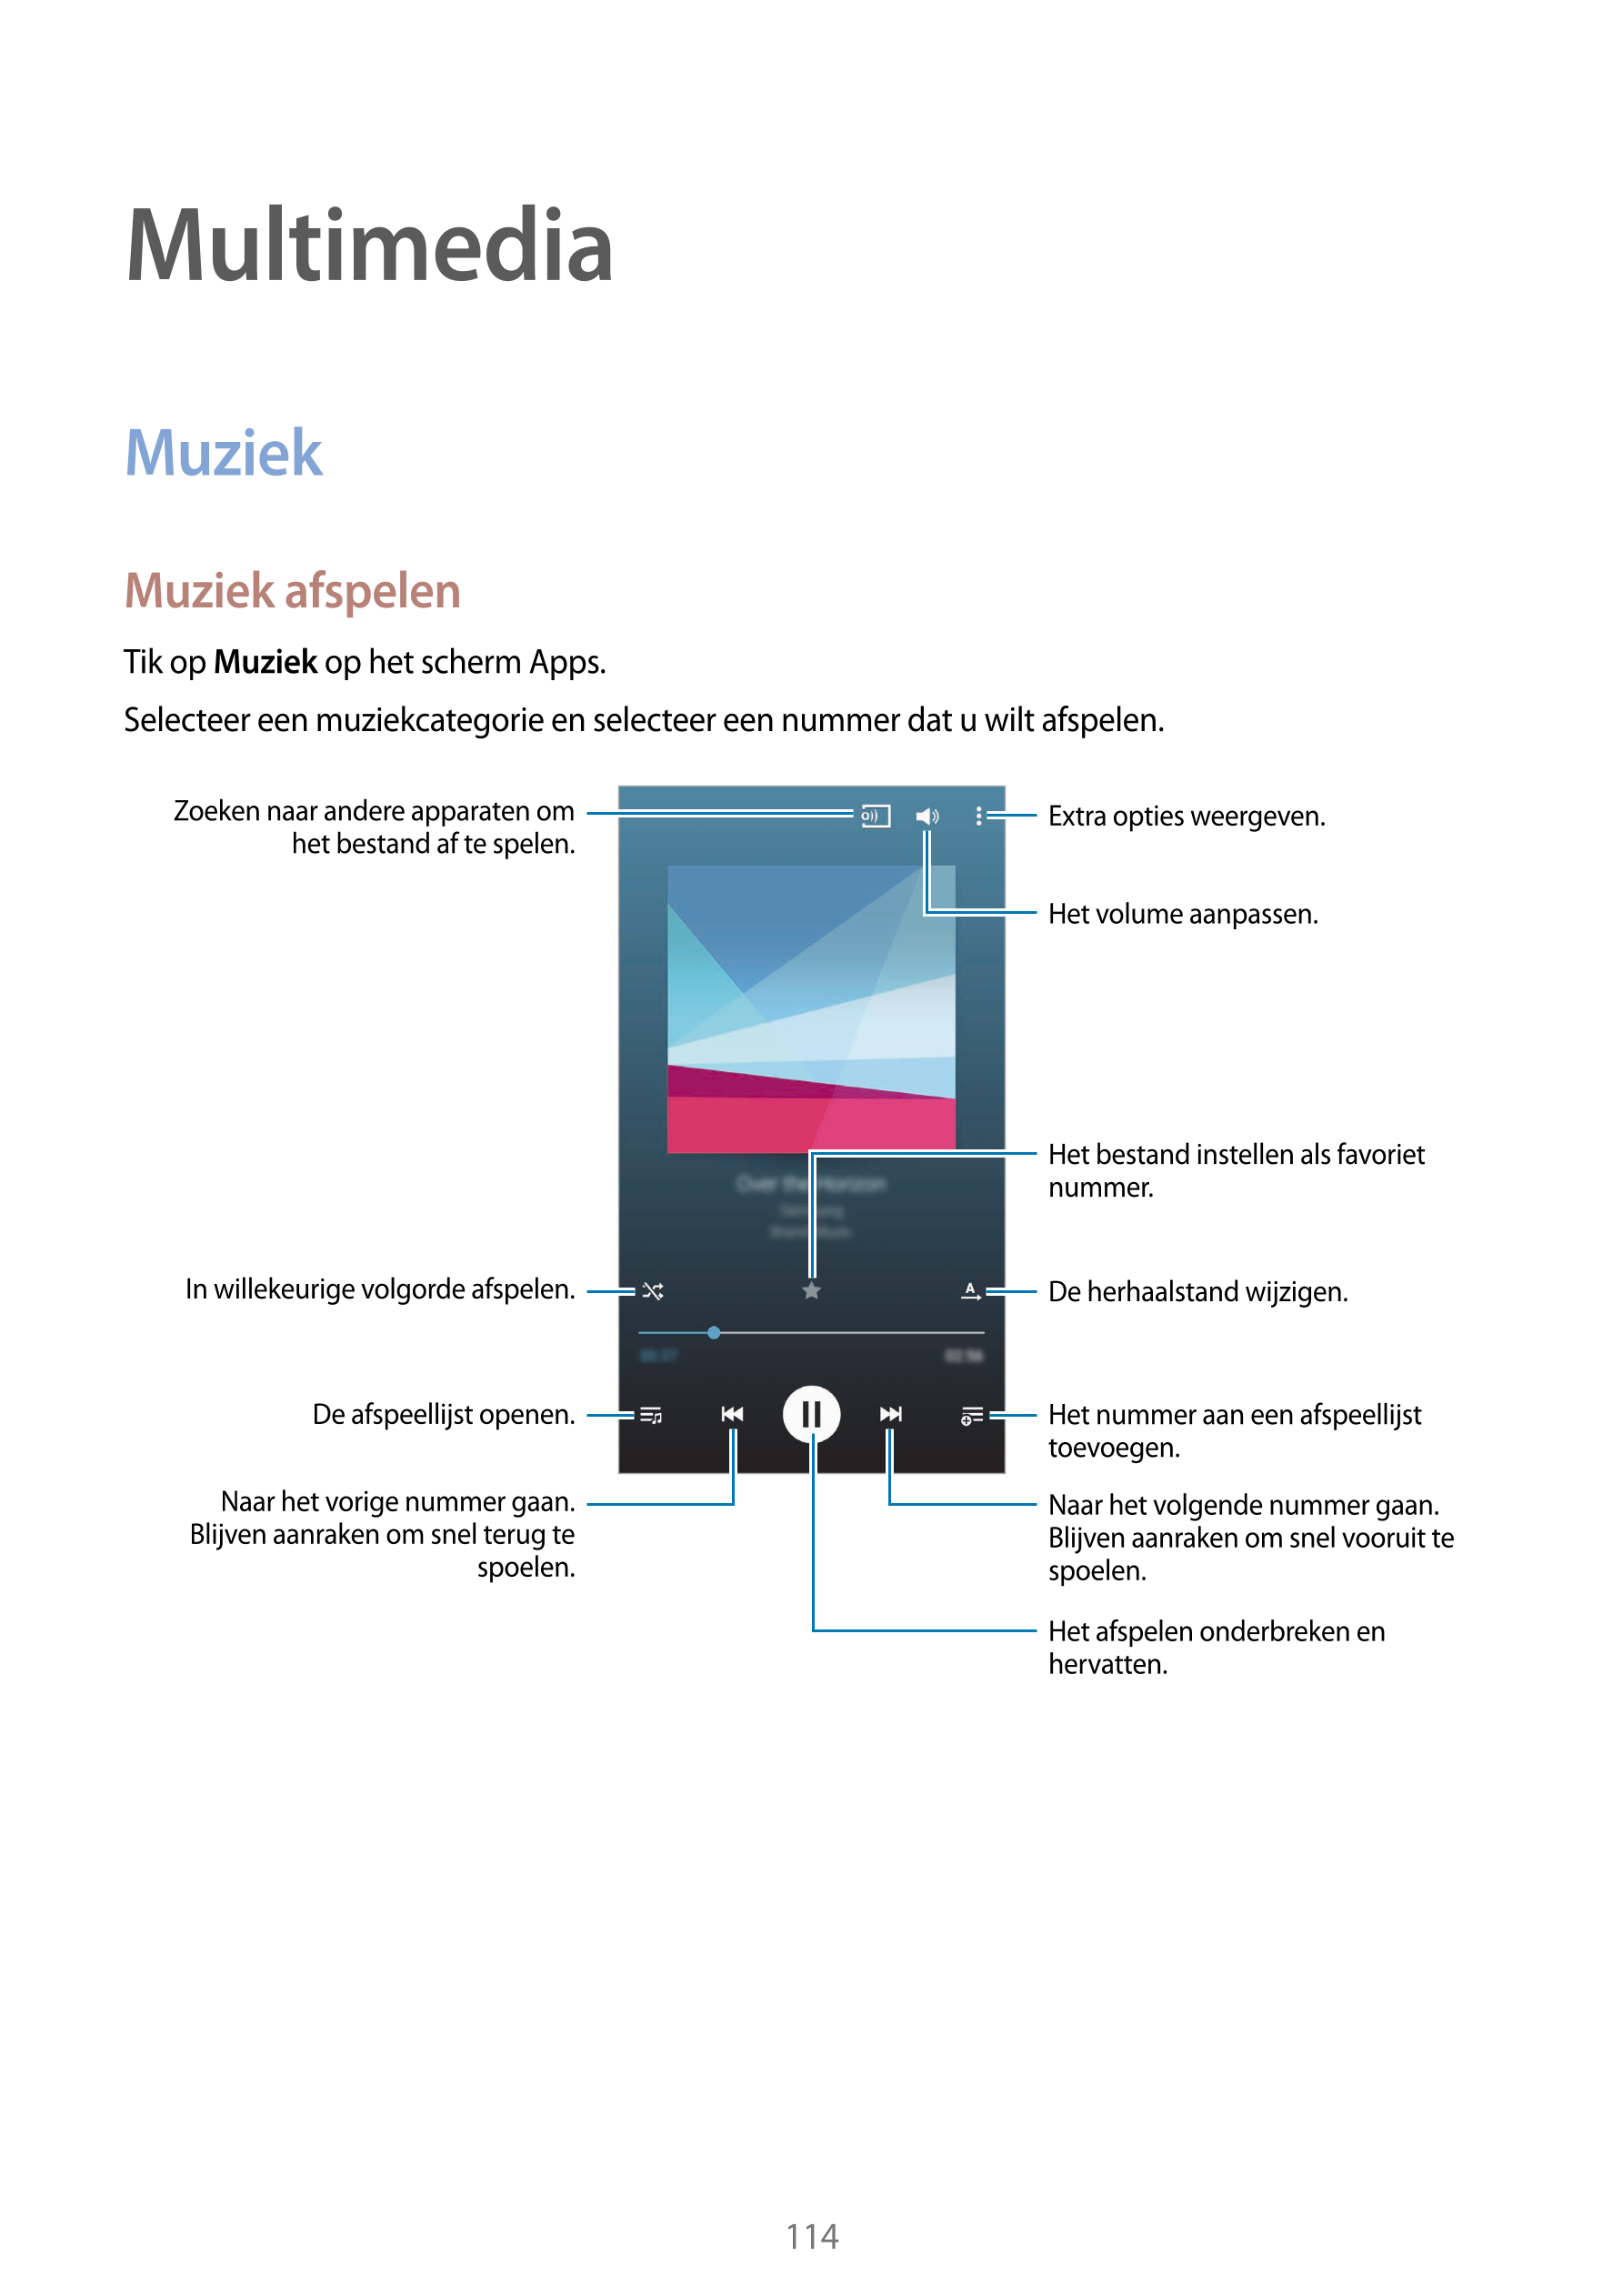 Multimedia
Muziek
Muziek afspelen
Tik op  Muziek op het scherm Apps.
Selecteer een muziekcategorie en selecteer een nummer dat u